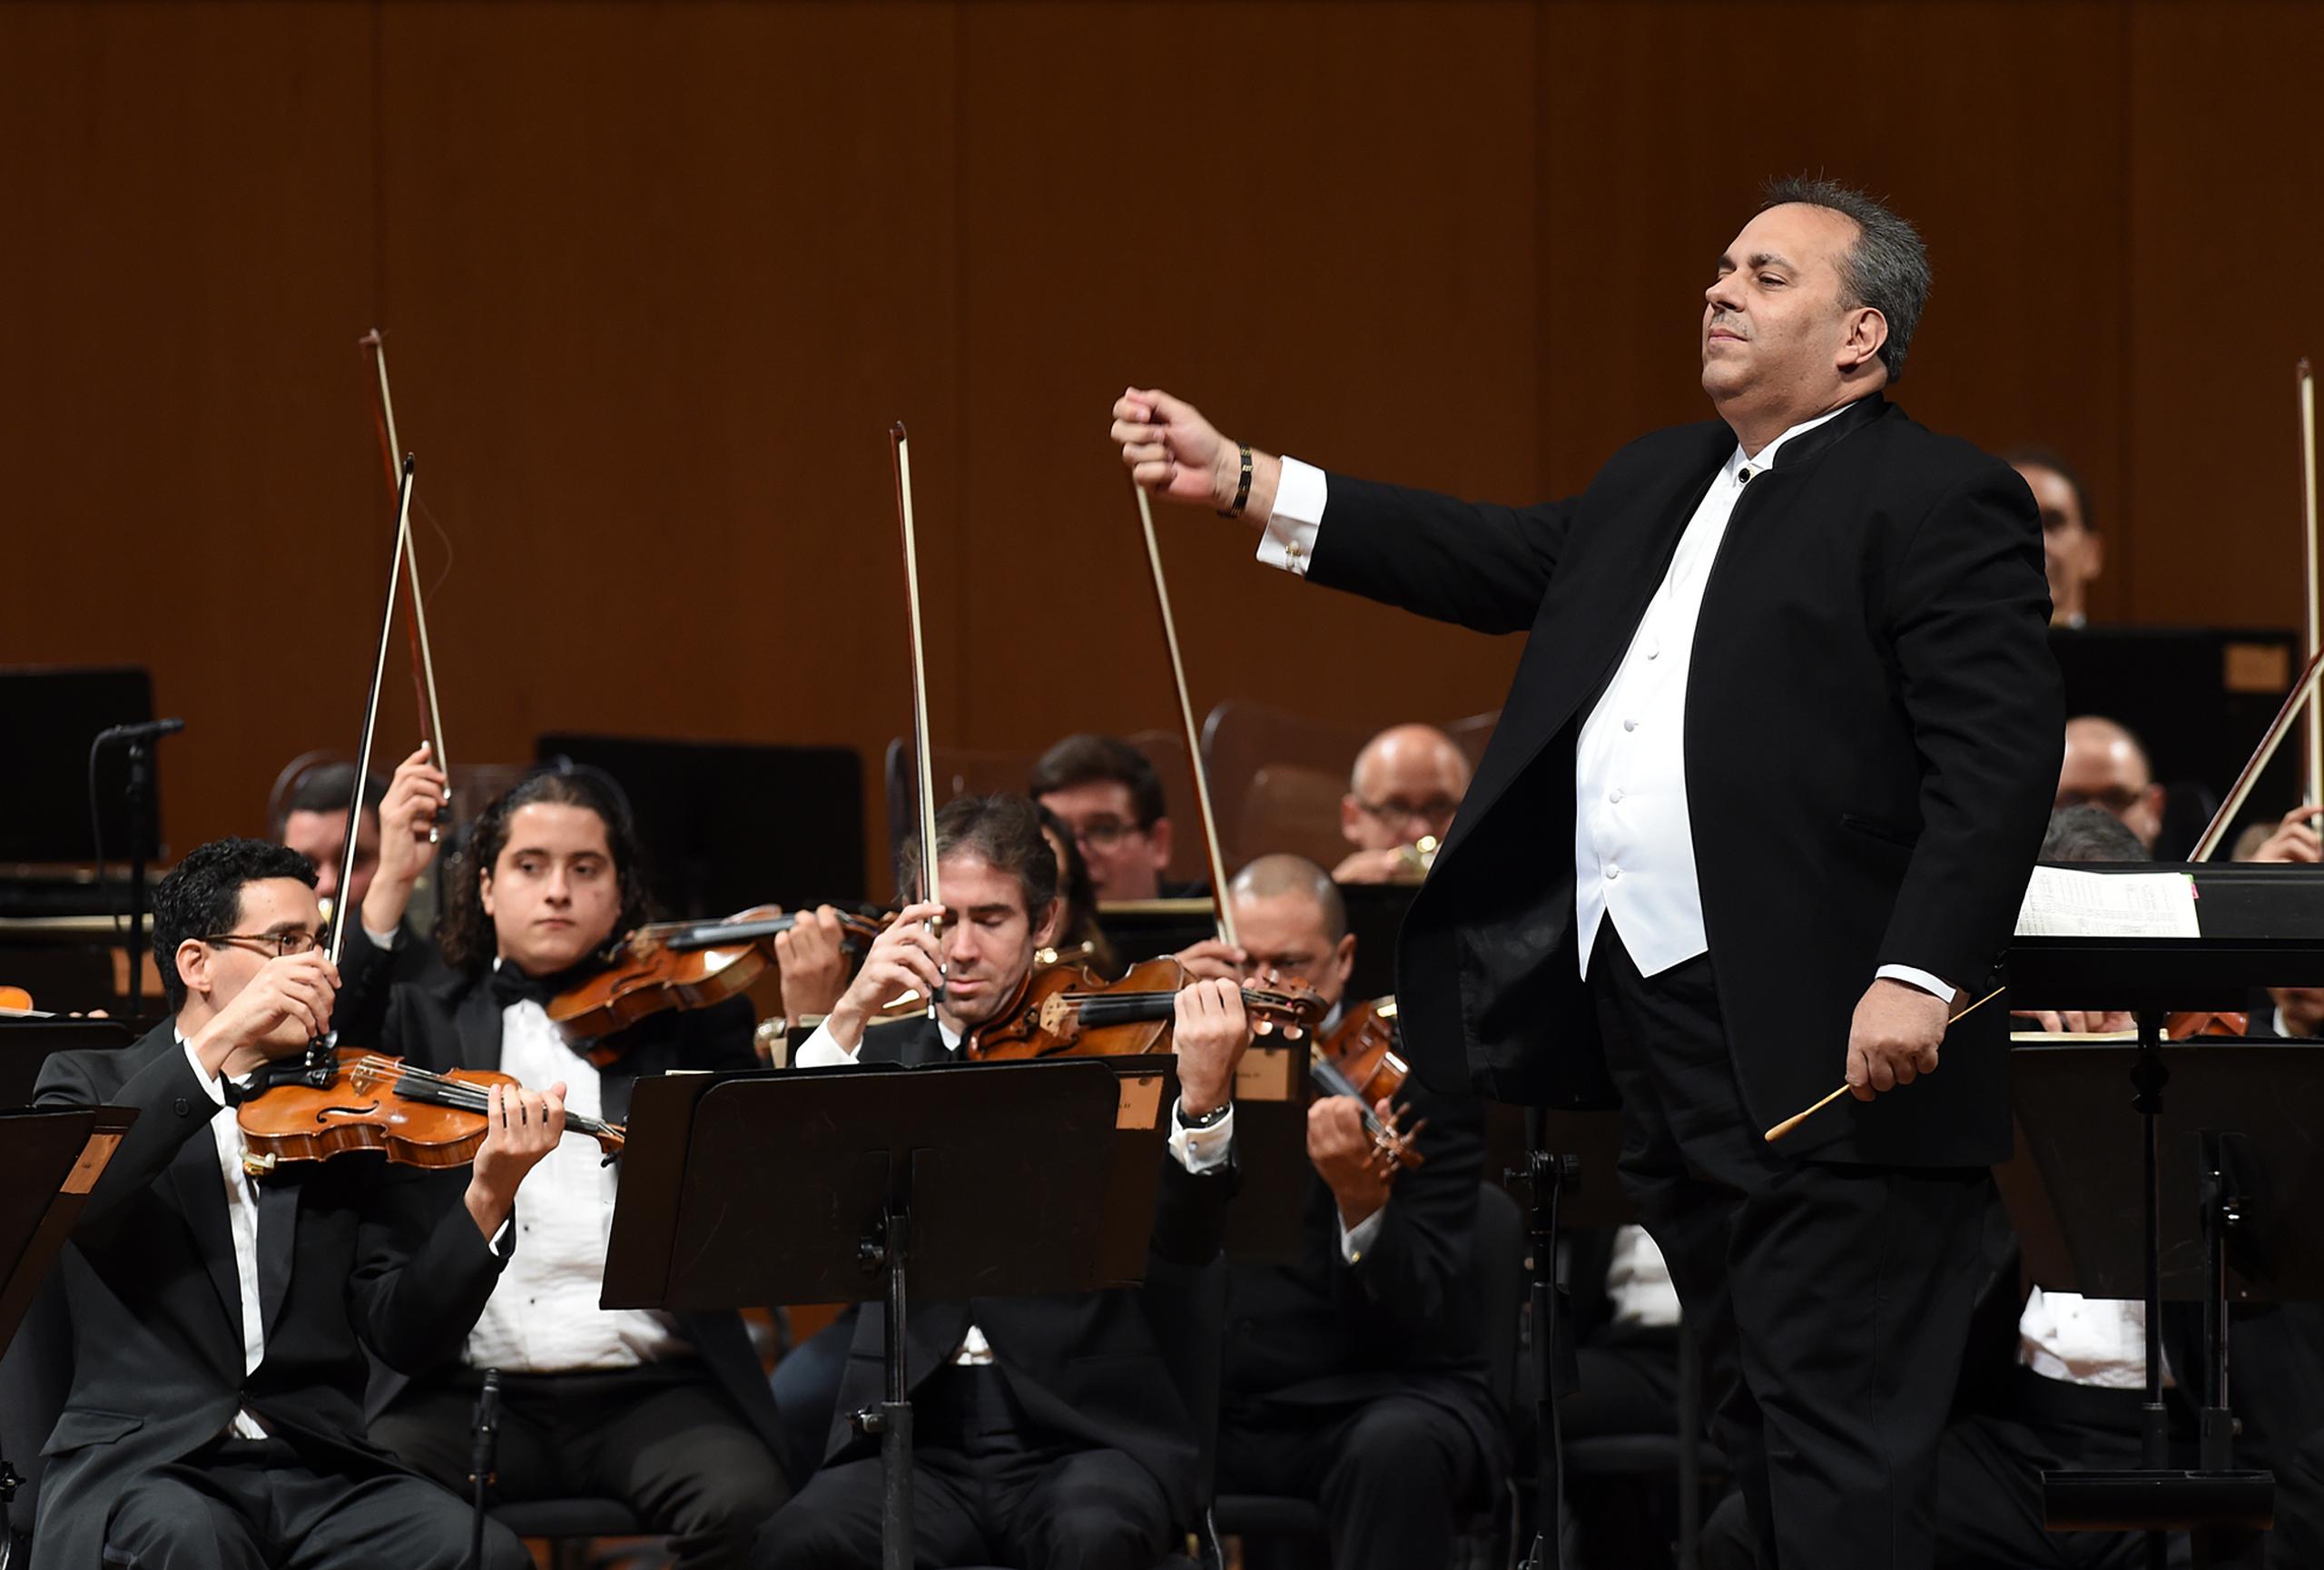 El director asociado de la Orquesta Sinfónica de Puerto Rico, Rafael Enrique Irizarry, dirigirá el concierto.
(ANDRE KANG / andre.kang@gfrmedia.com)